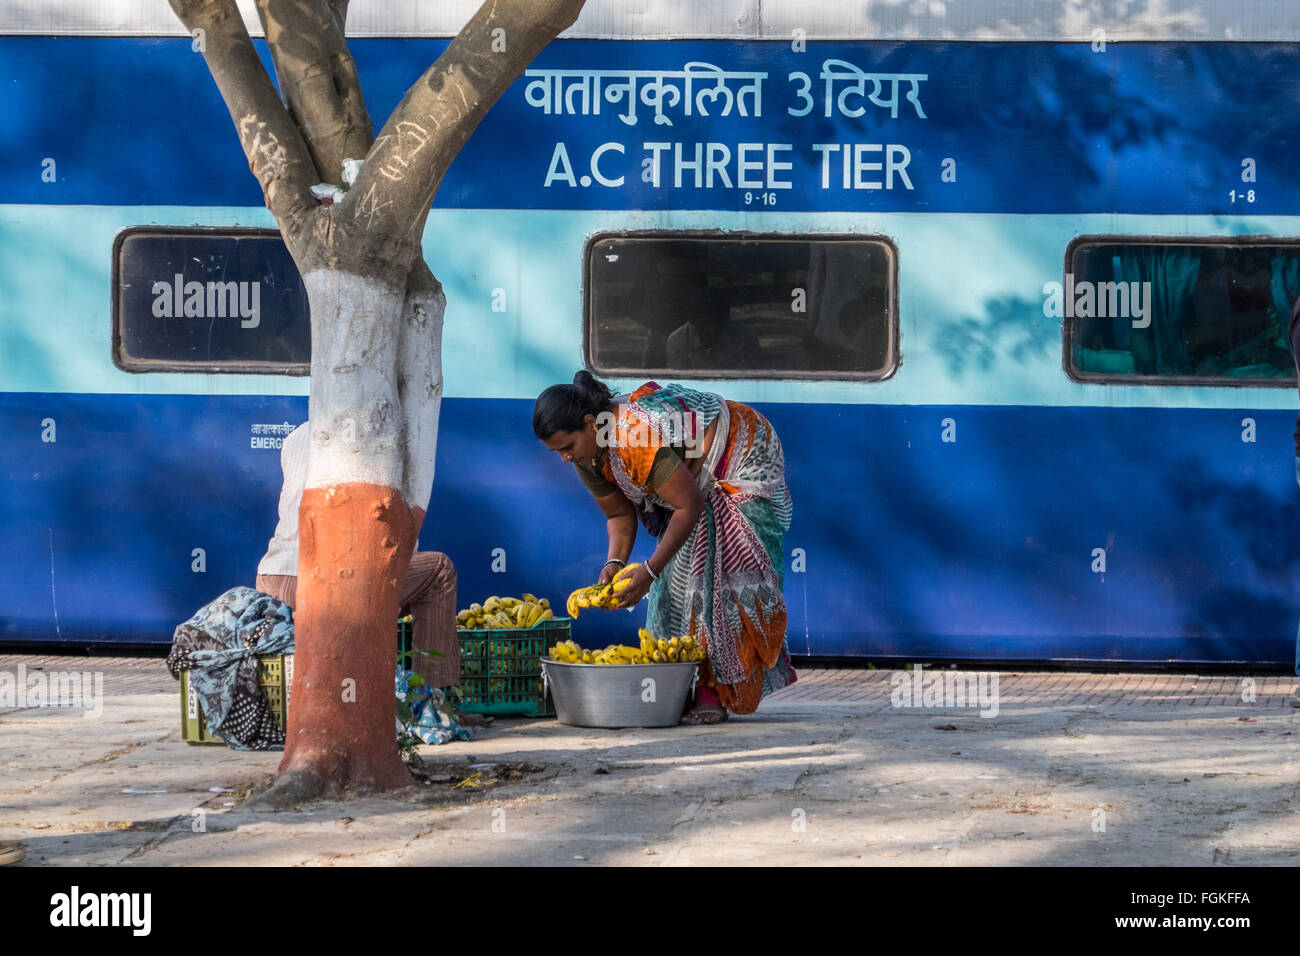 Vendeur de collations pour les passagers d'un train des chemins de fer indiens Banque D'Images